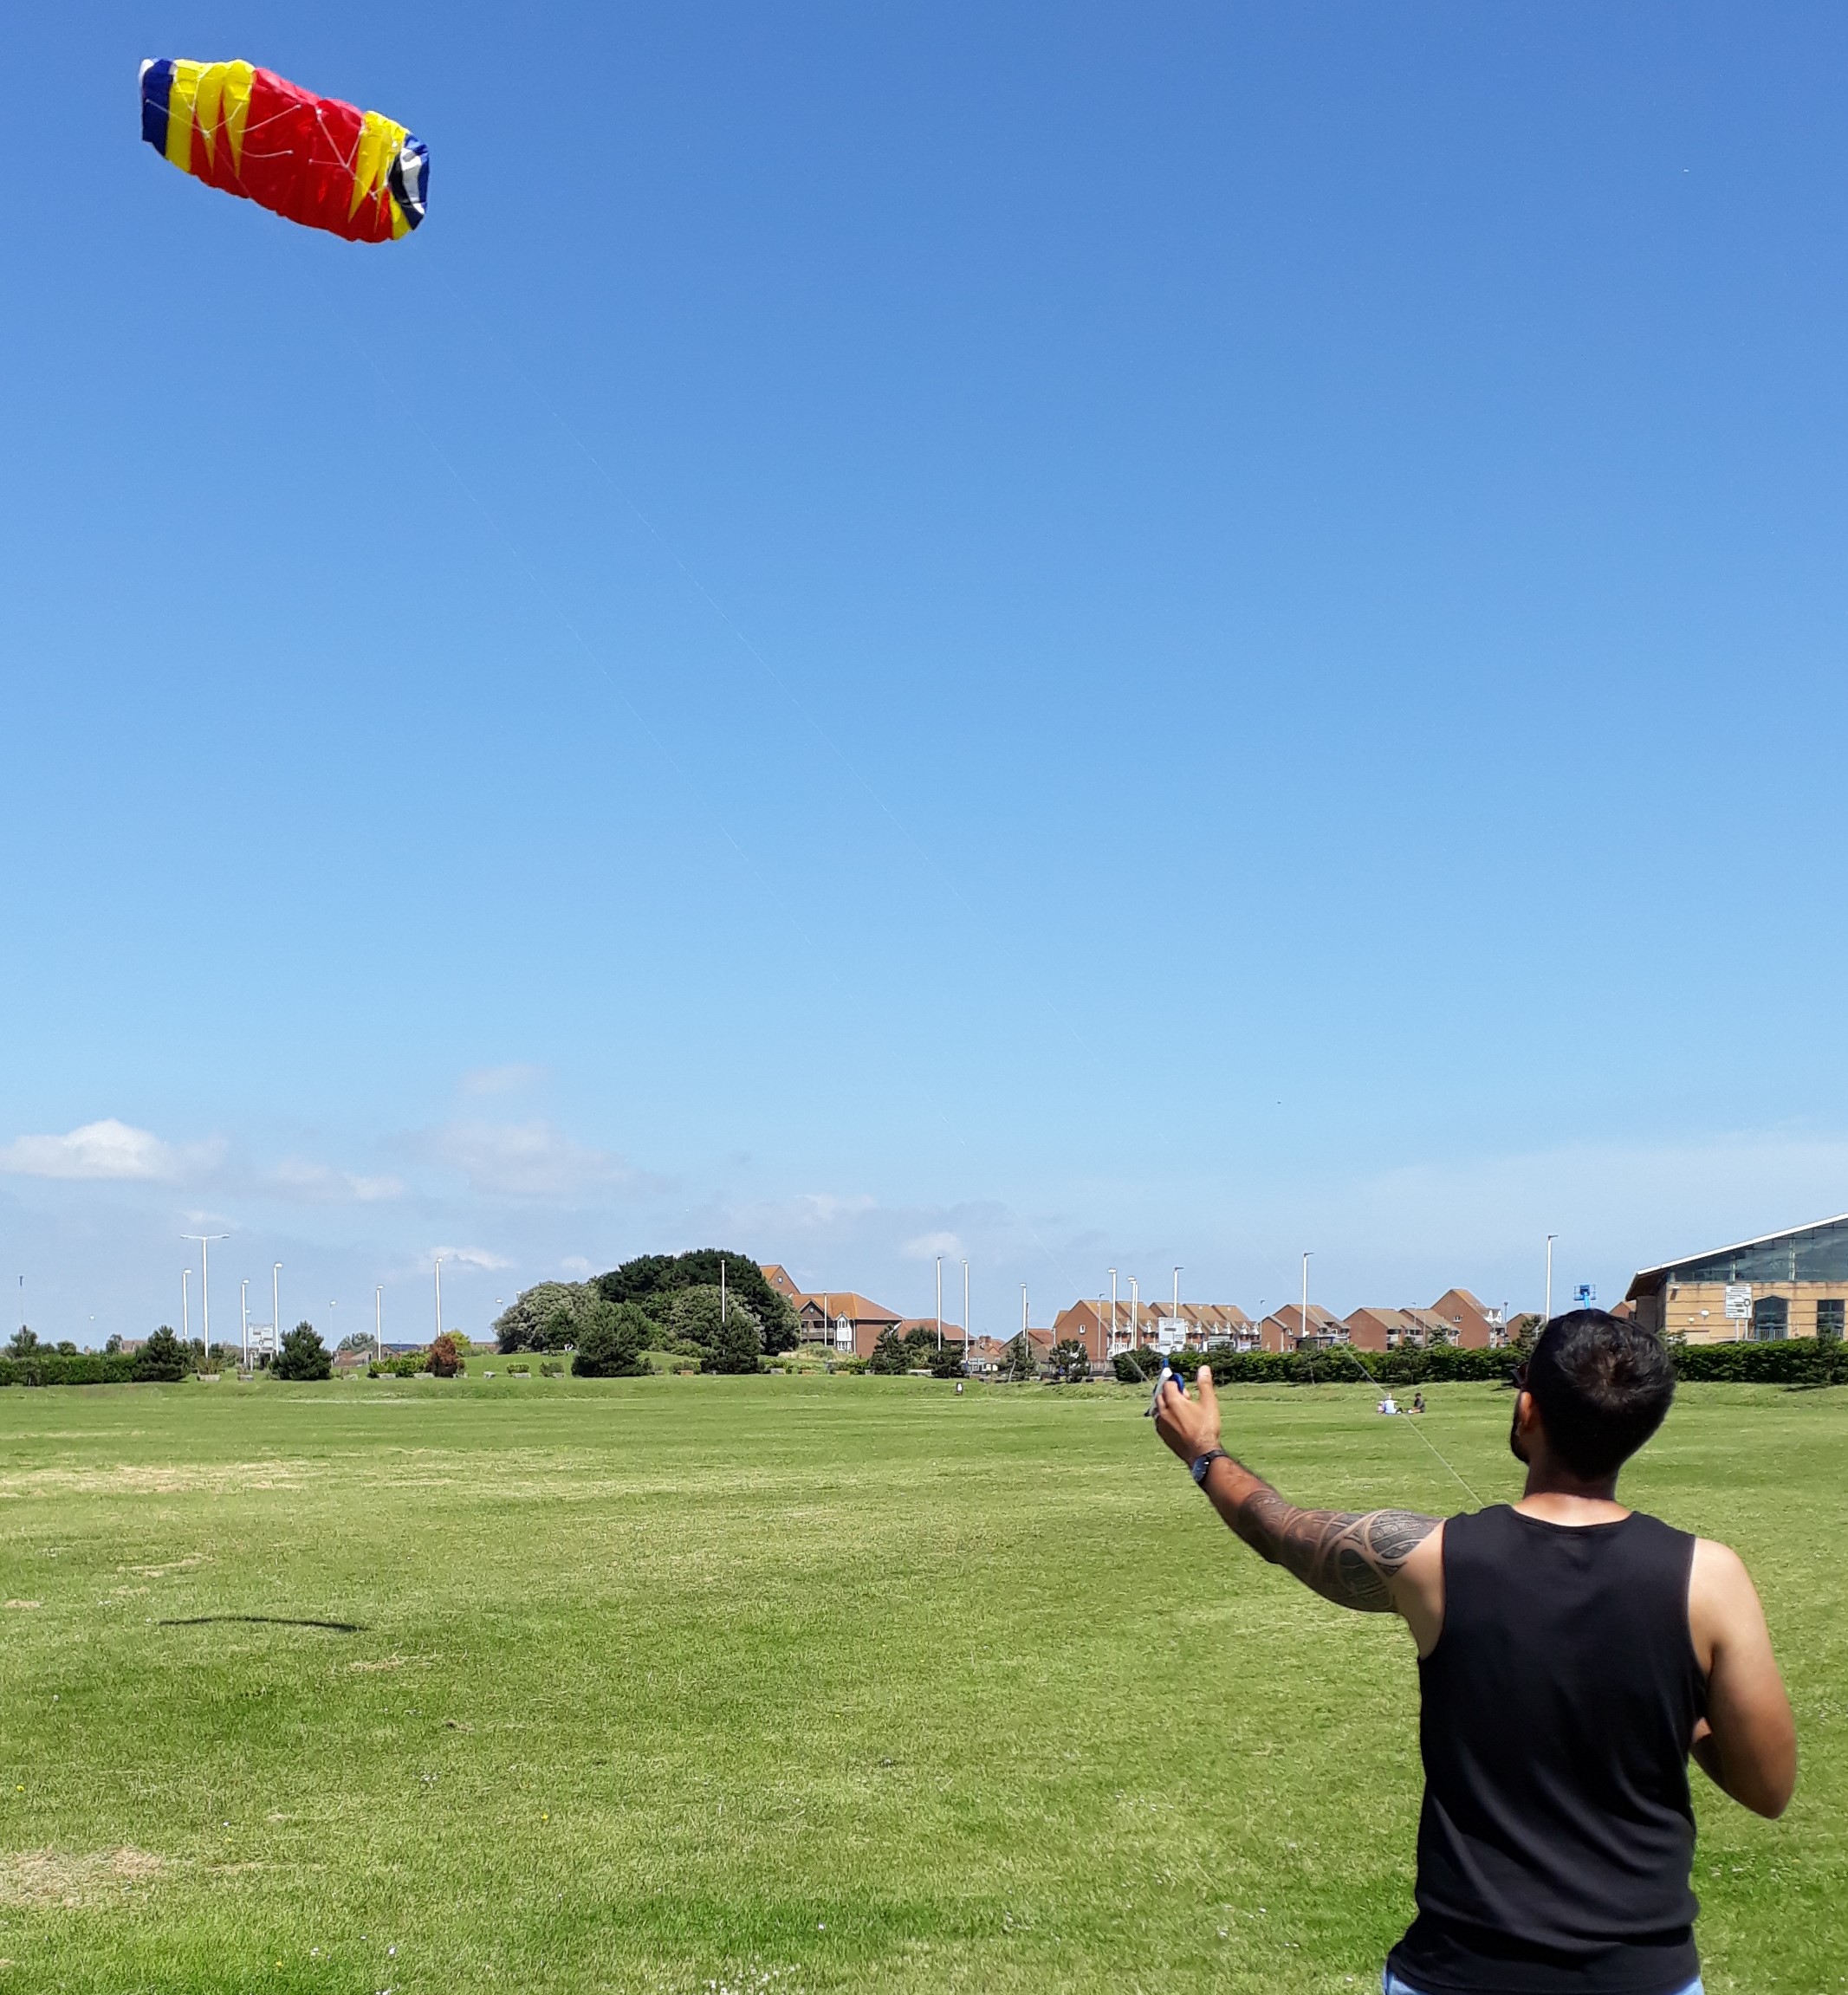 paraglider kiting in princes park, eastbourne